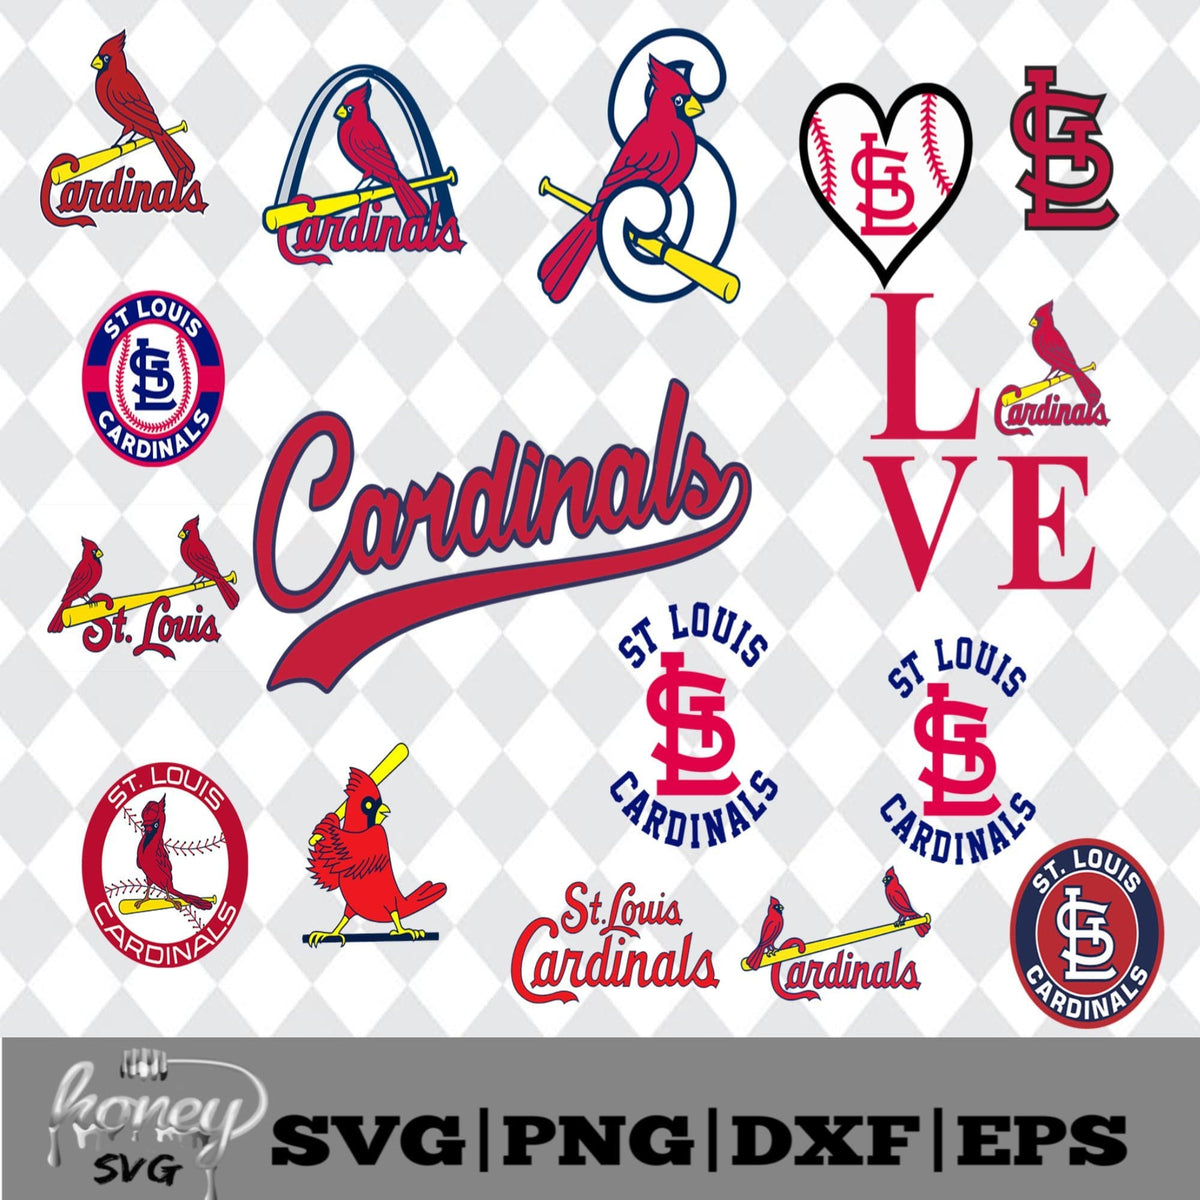 Download St. Louis Cardinals MLB Svg, Eps, Dxf, Png - Honey SVG